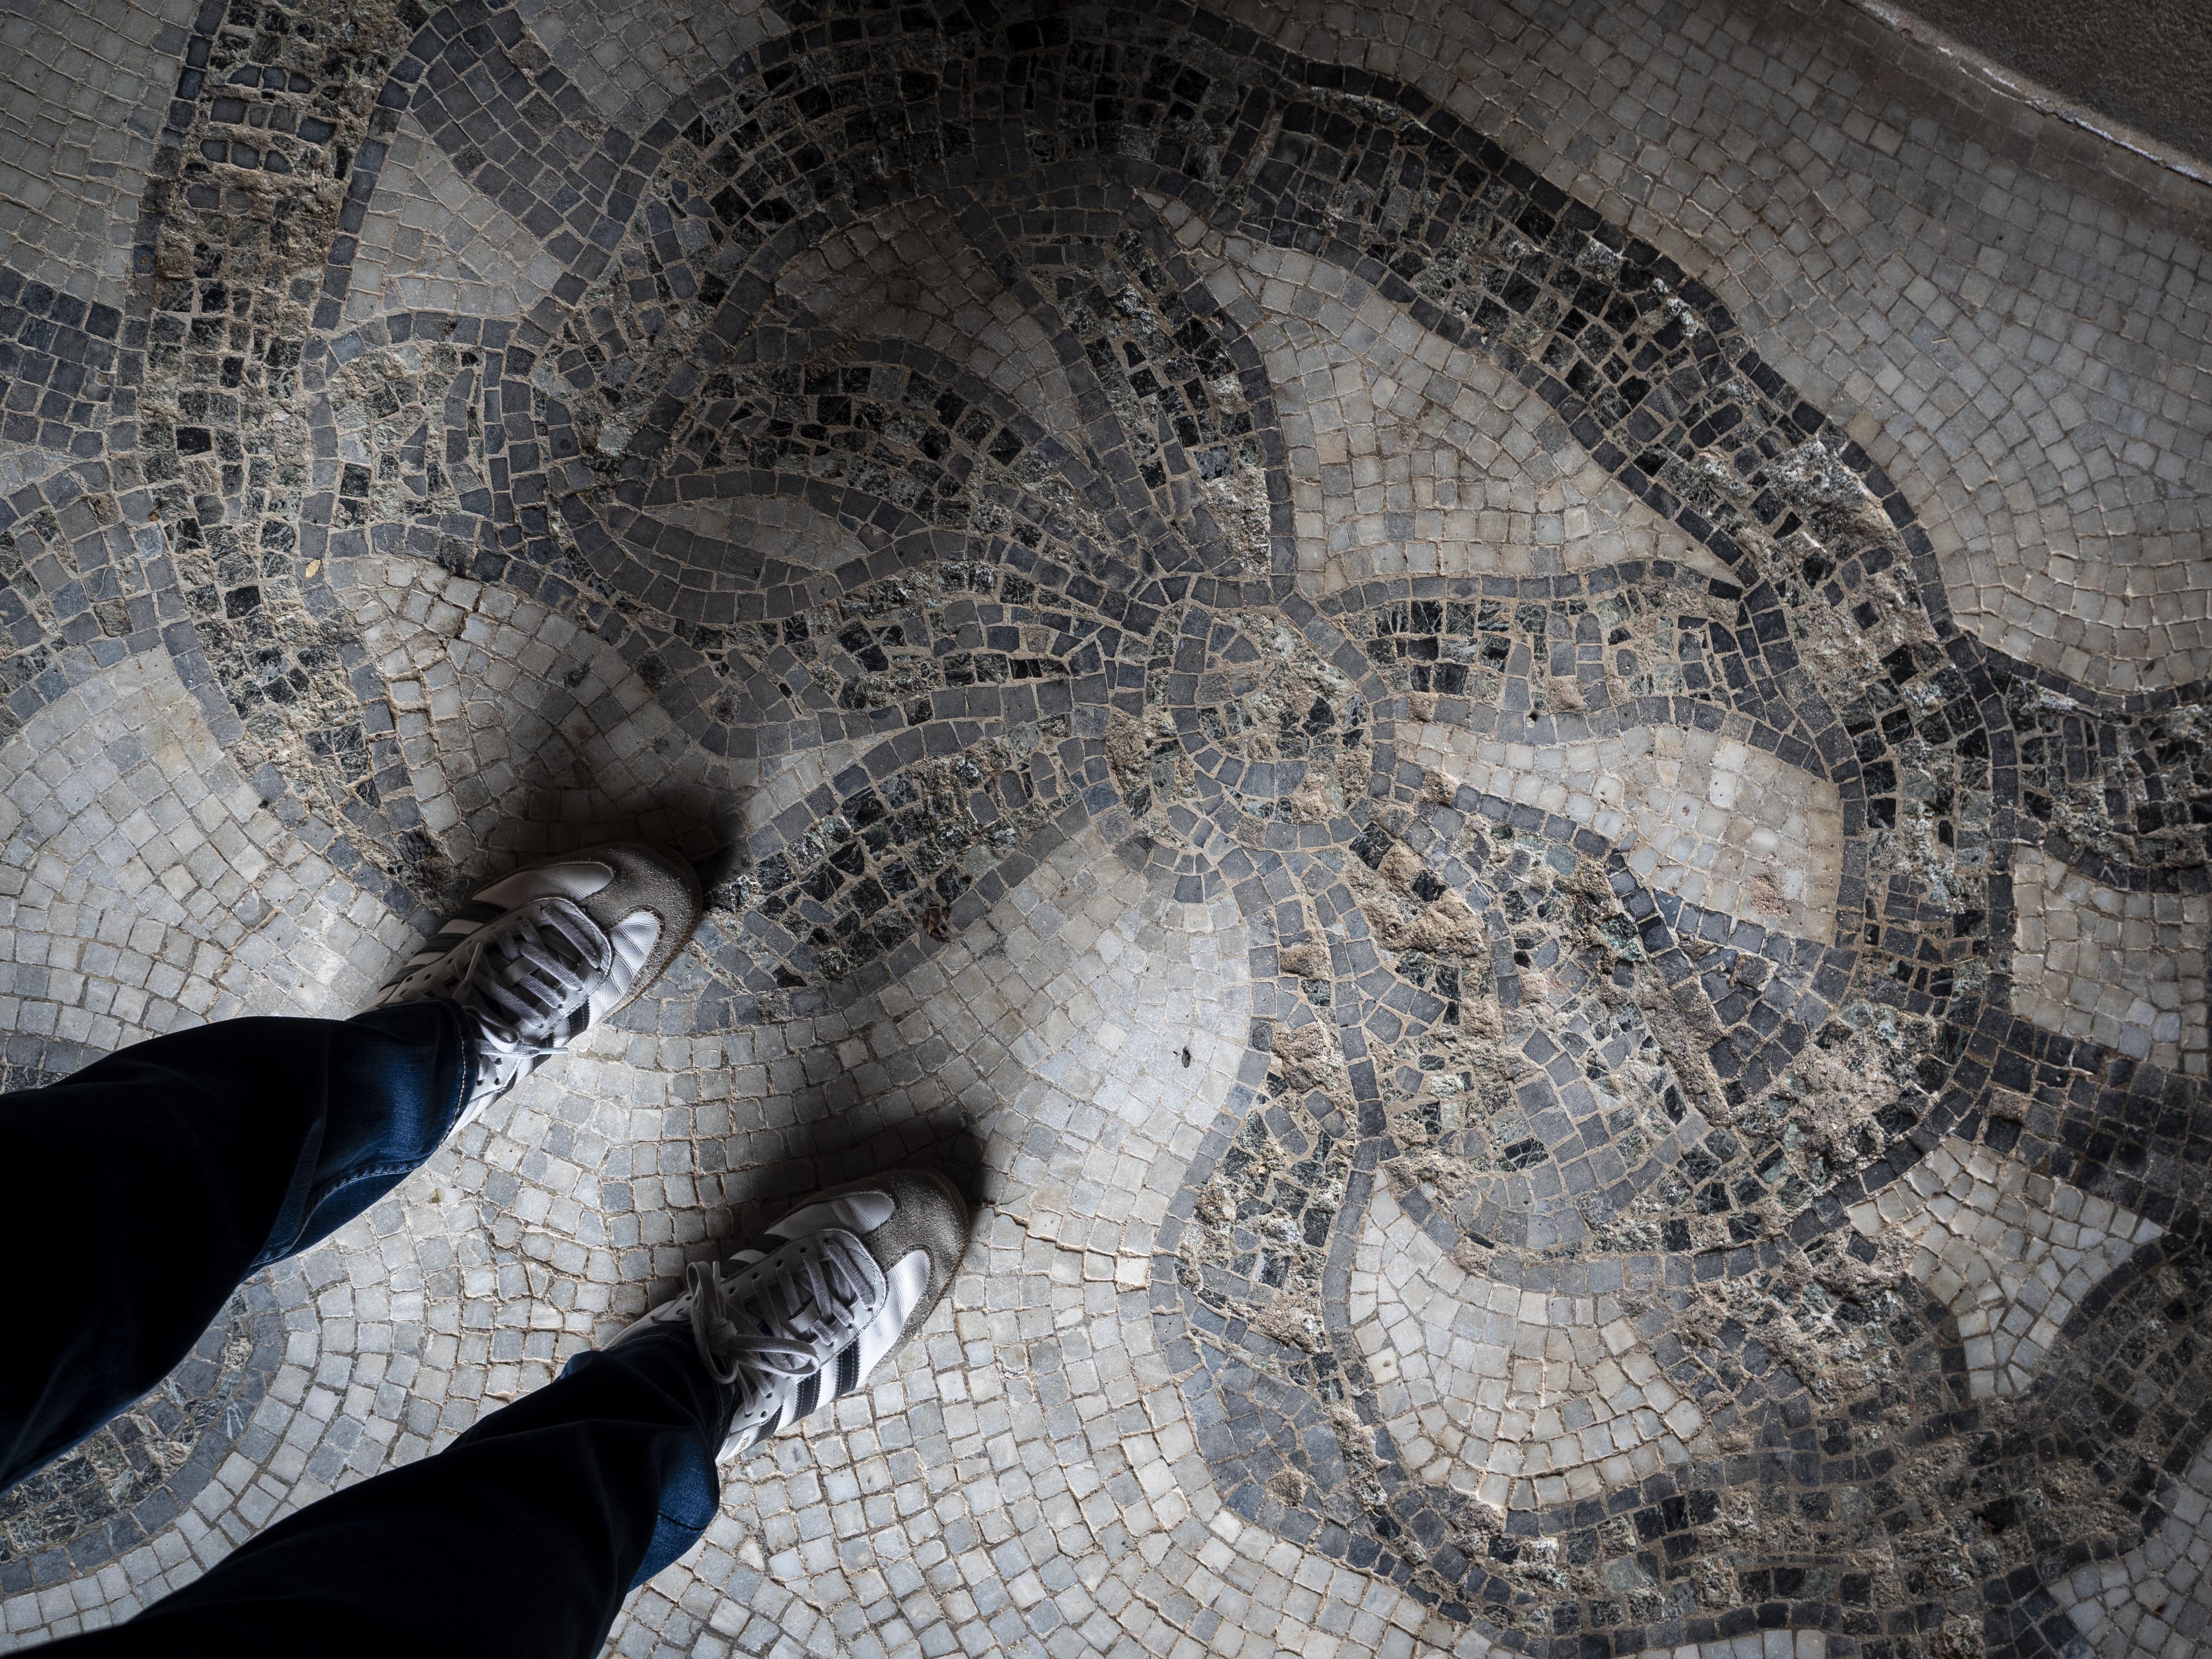 El terra del panteó està cobert per un bonic mosaic amb dibuixos. FOTO: Anna E. Puig